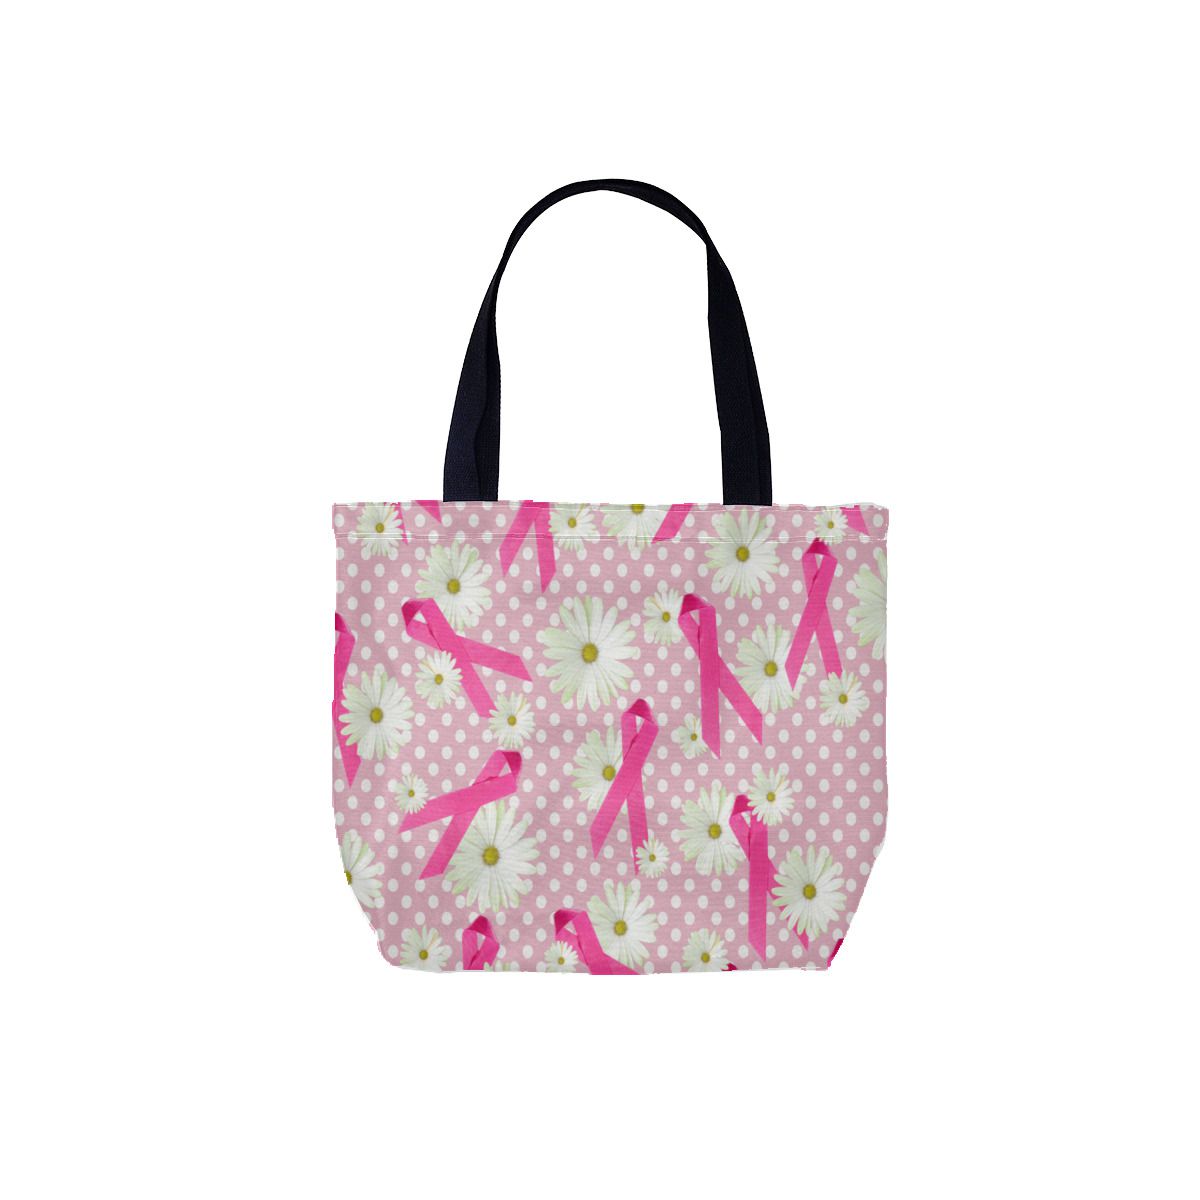 Pink ribbon breast cancer awareness on polka dot Canvas Bag No.IOABL5